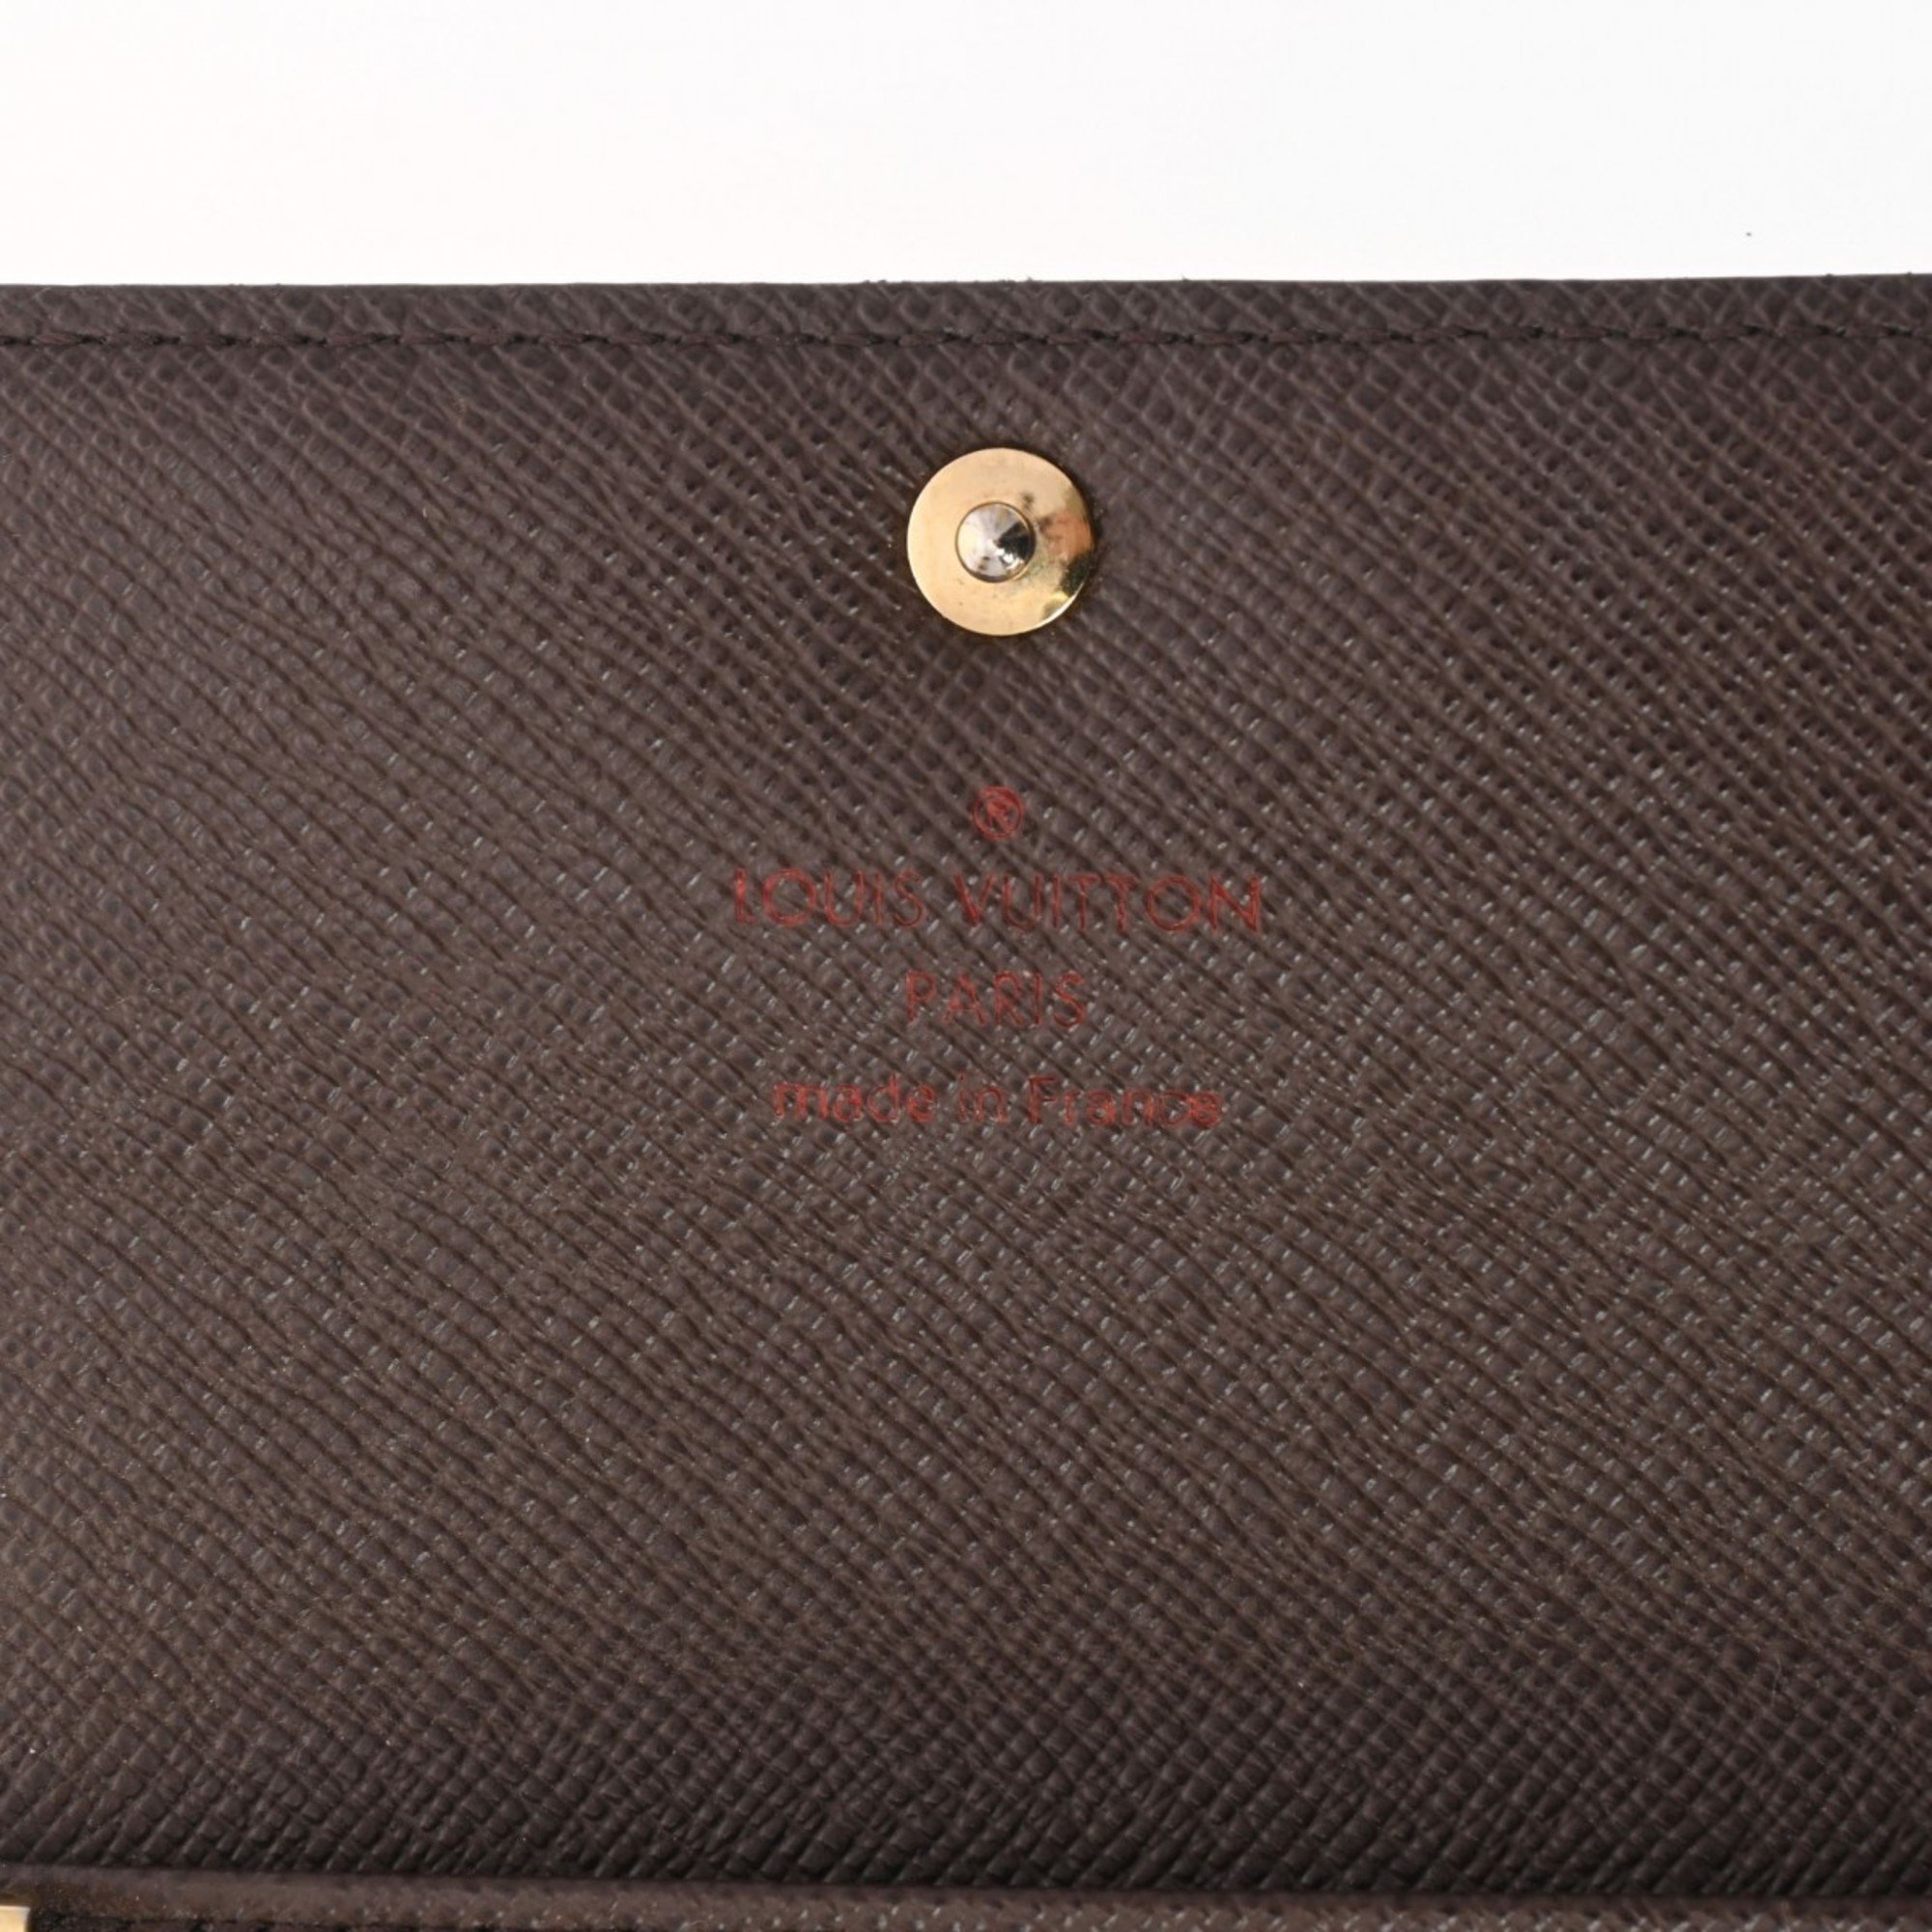 LOUIS VUITTON Louis Vuitton Damier 6-Key Case Brown N62630 Unisex Canvas Key